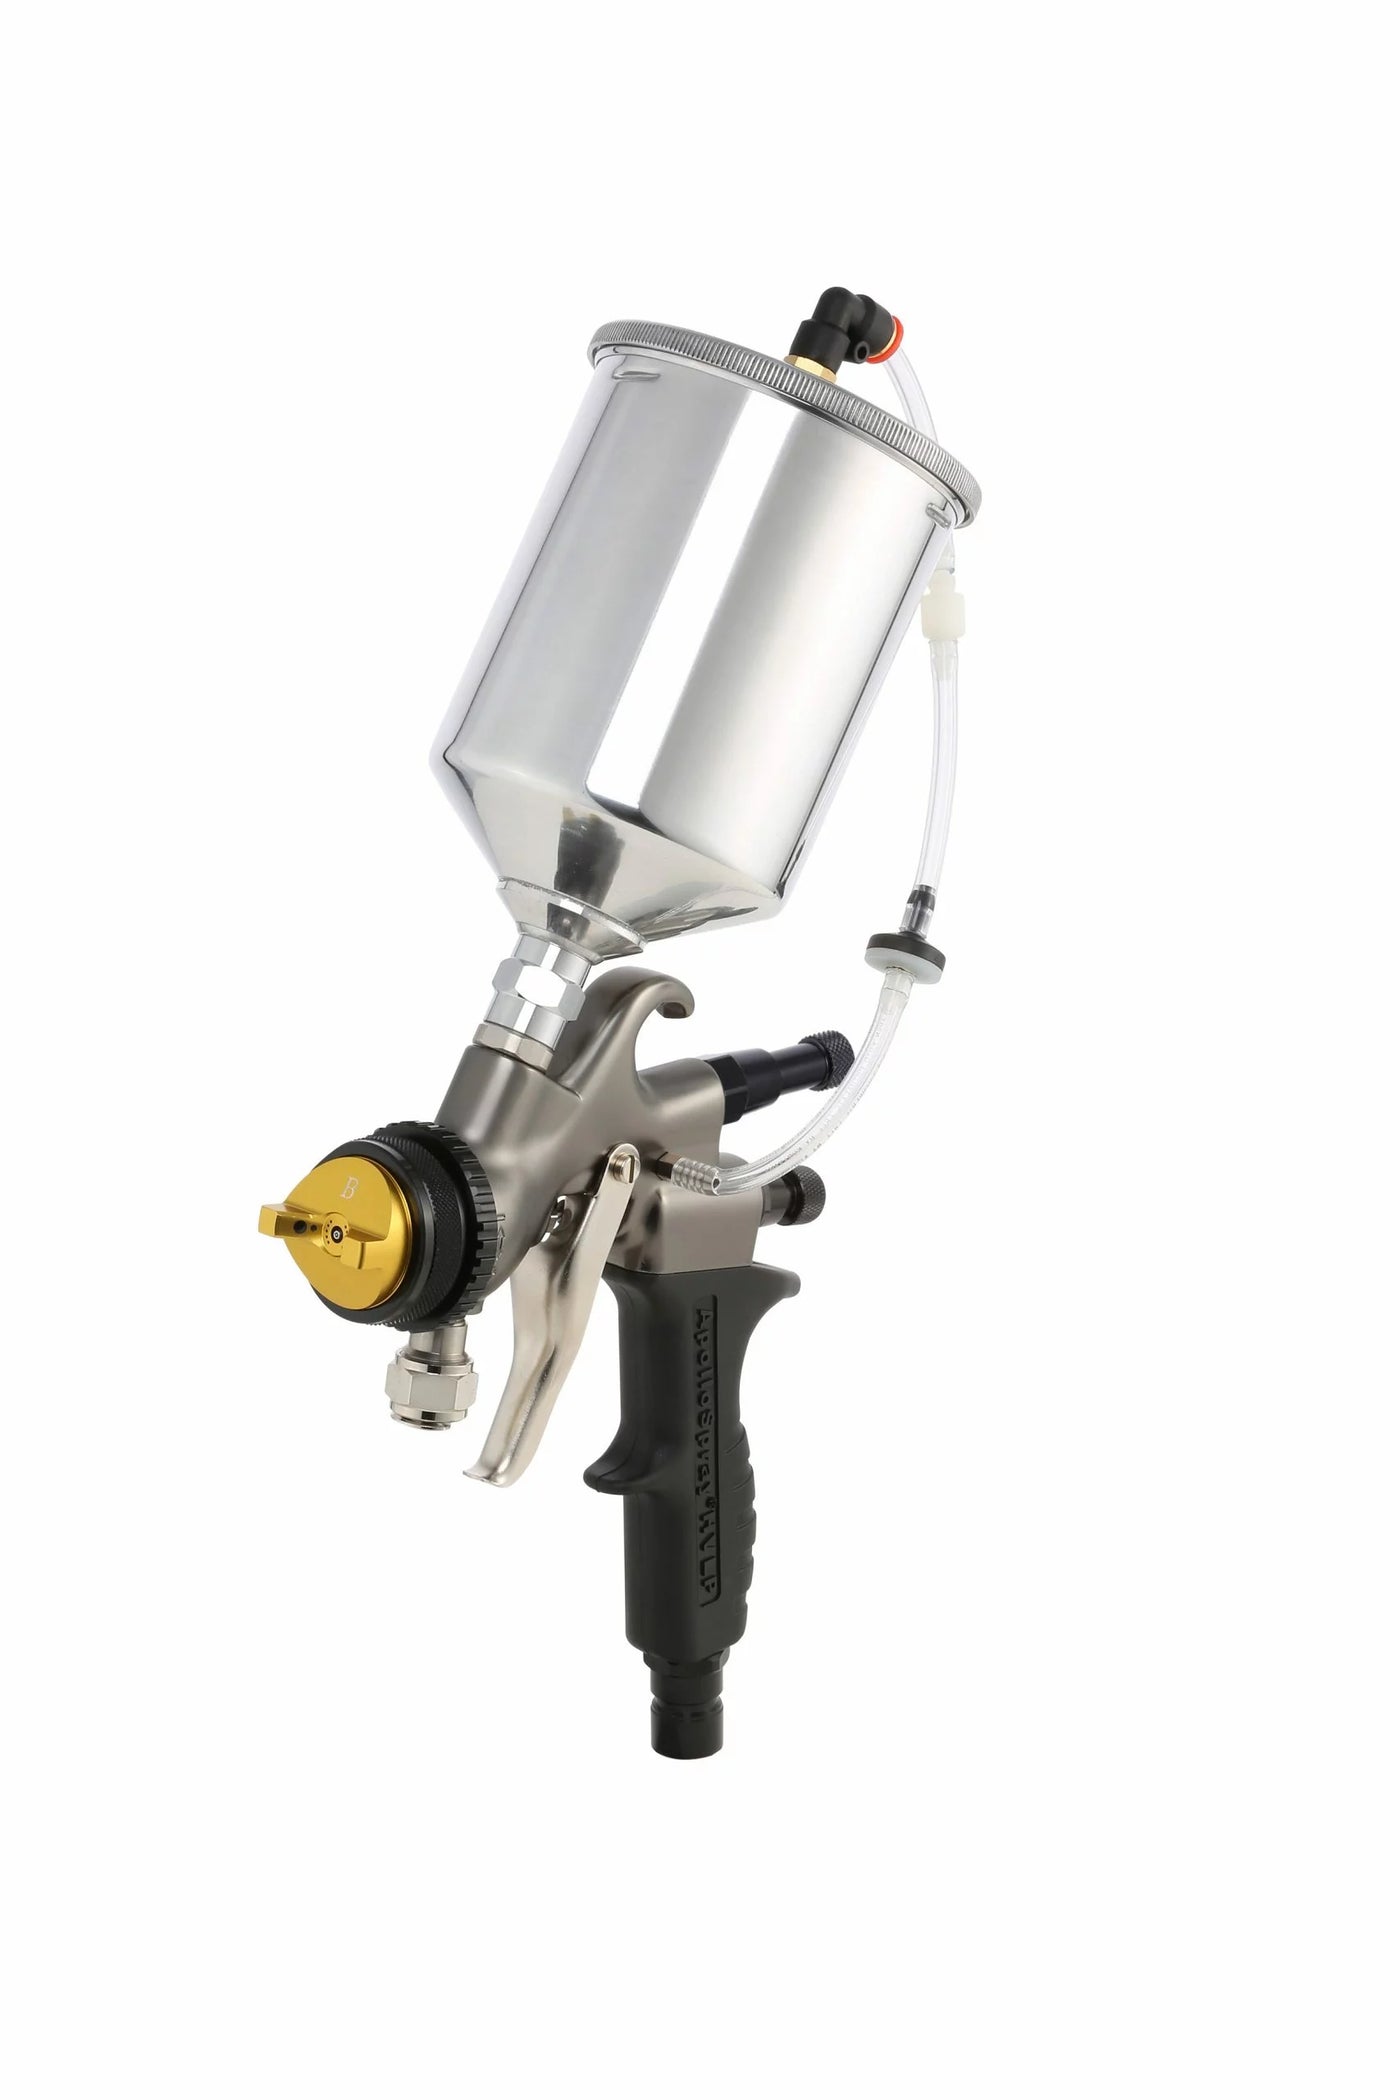 The Atomizer A7700 HVLP Spray Gun | Apollo HVLP Turbo Spray TrueHVLP™